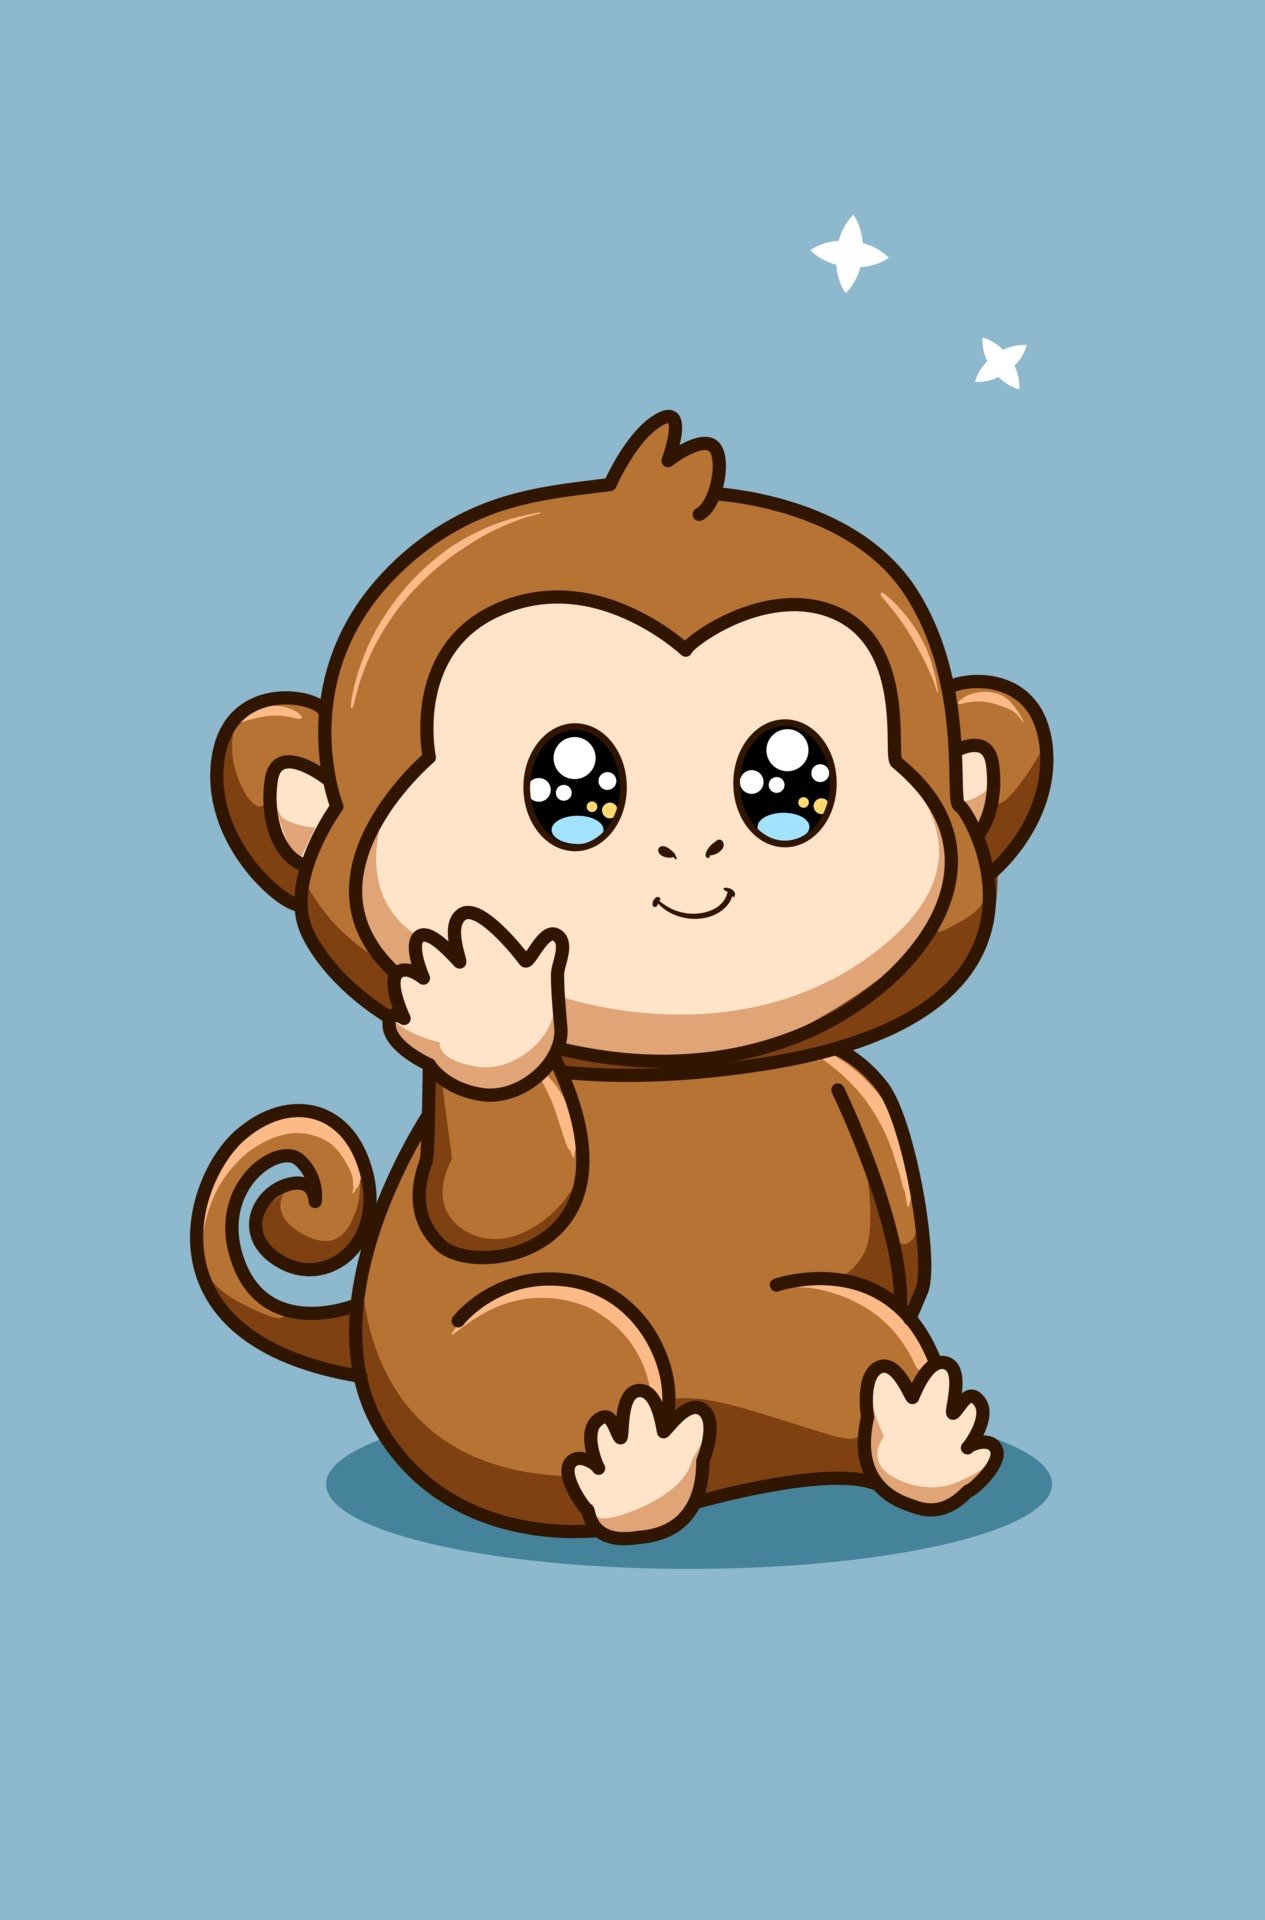 Bạn có yêu thích sự dễ thương và cute của con khỉ? Hãy chiêm ngưỡng những hình ảnh con khỉ cute, ngộ nghĩnh và đẹp nhất qua bài viết này. Bạn sẽ thấy những khoảnh khắc tuyệt đẹp của loài động vật đáng yêu này trong những tư thế đáng yêu nhất. Hãy trải nghiệm cảm giác tuyệt vời của sự đáng yêu này.